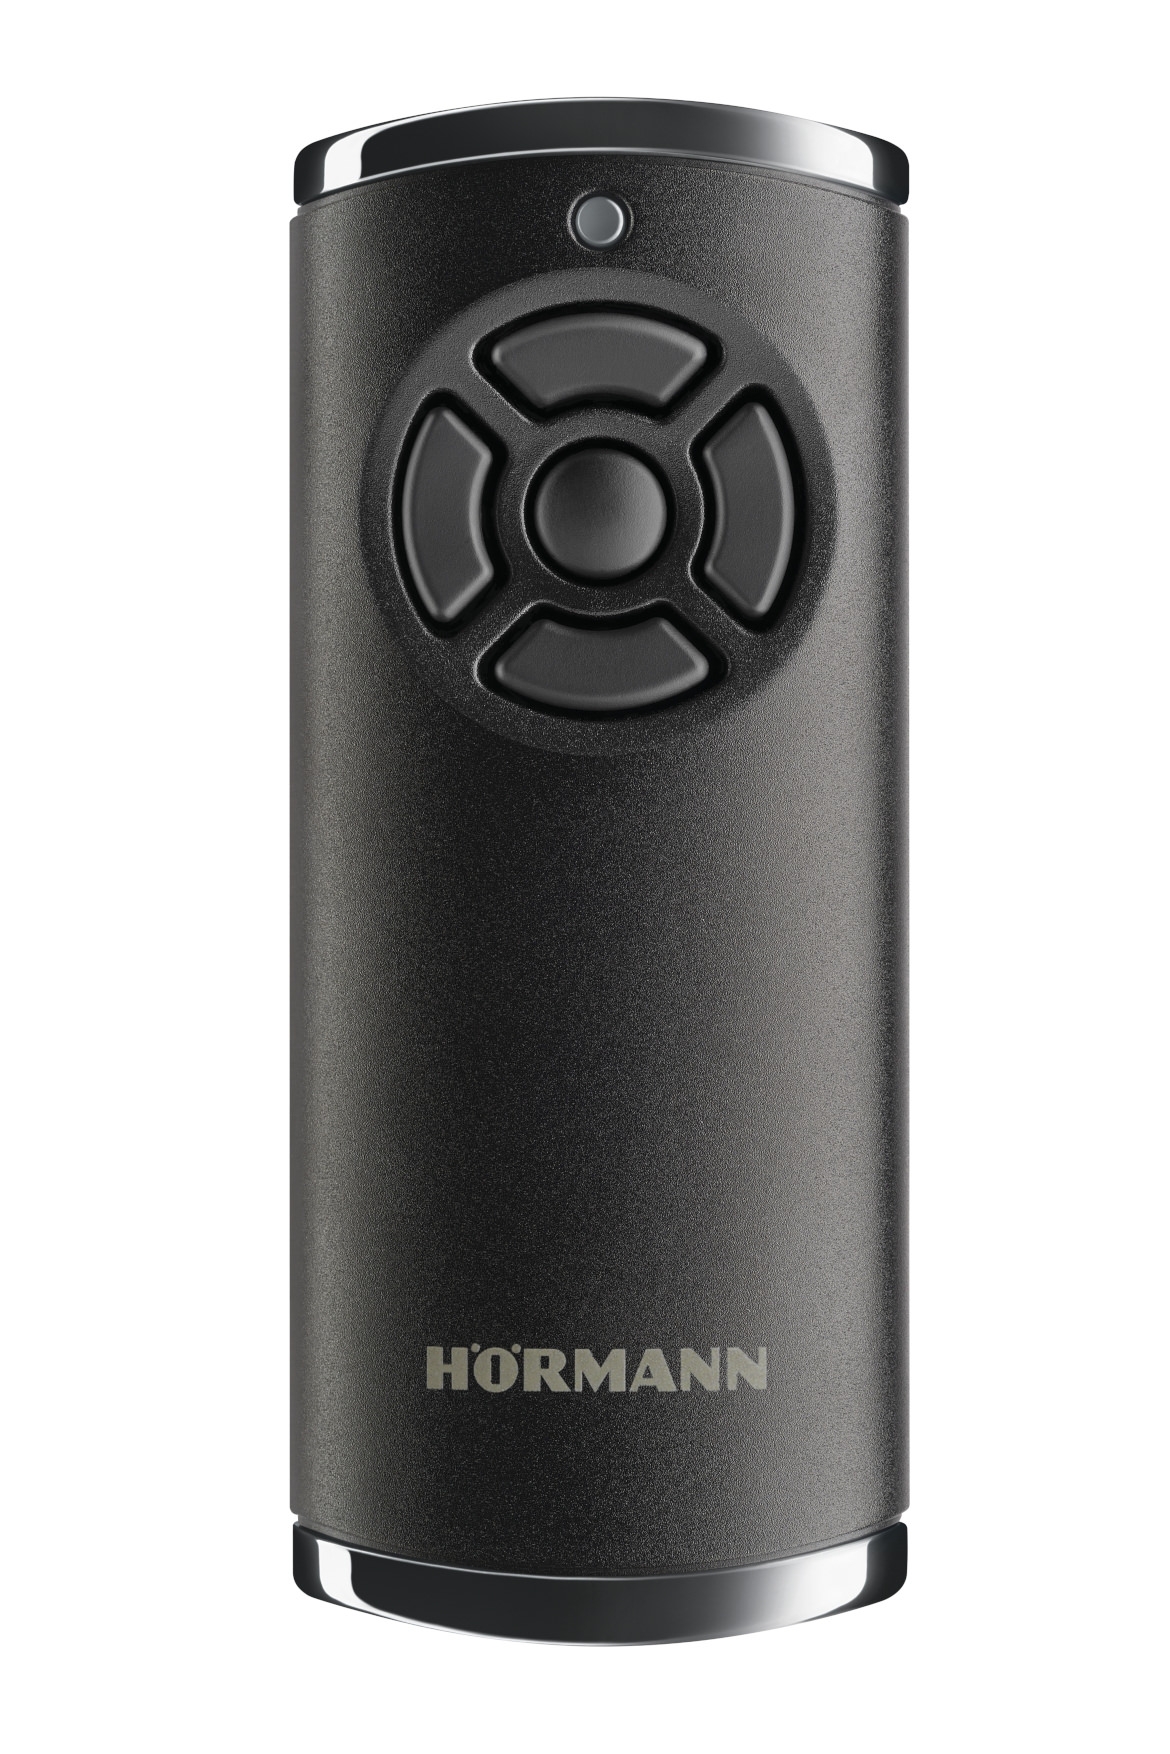 3x Hörmann HS5 BS 868 Mhz Weiß Handsender kompatibel mit blauen Tasten